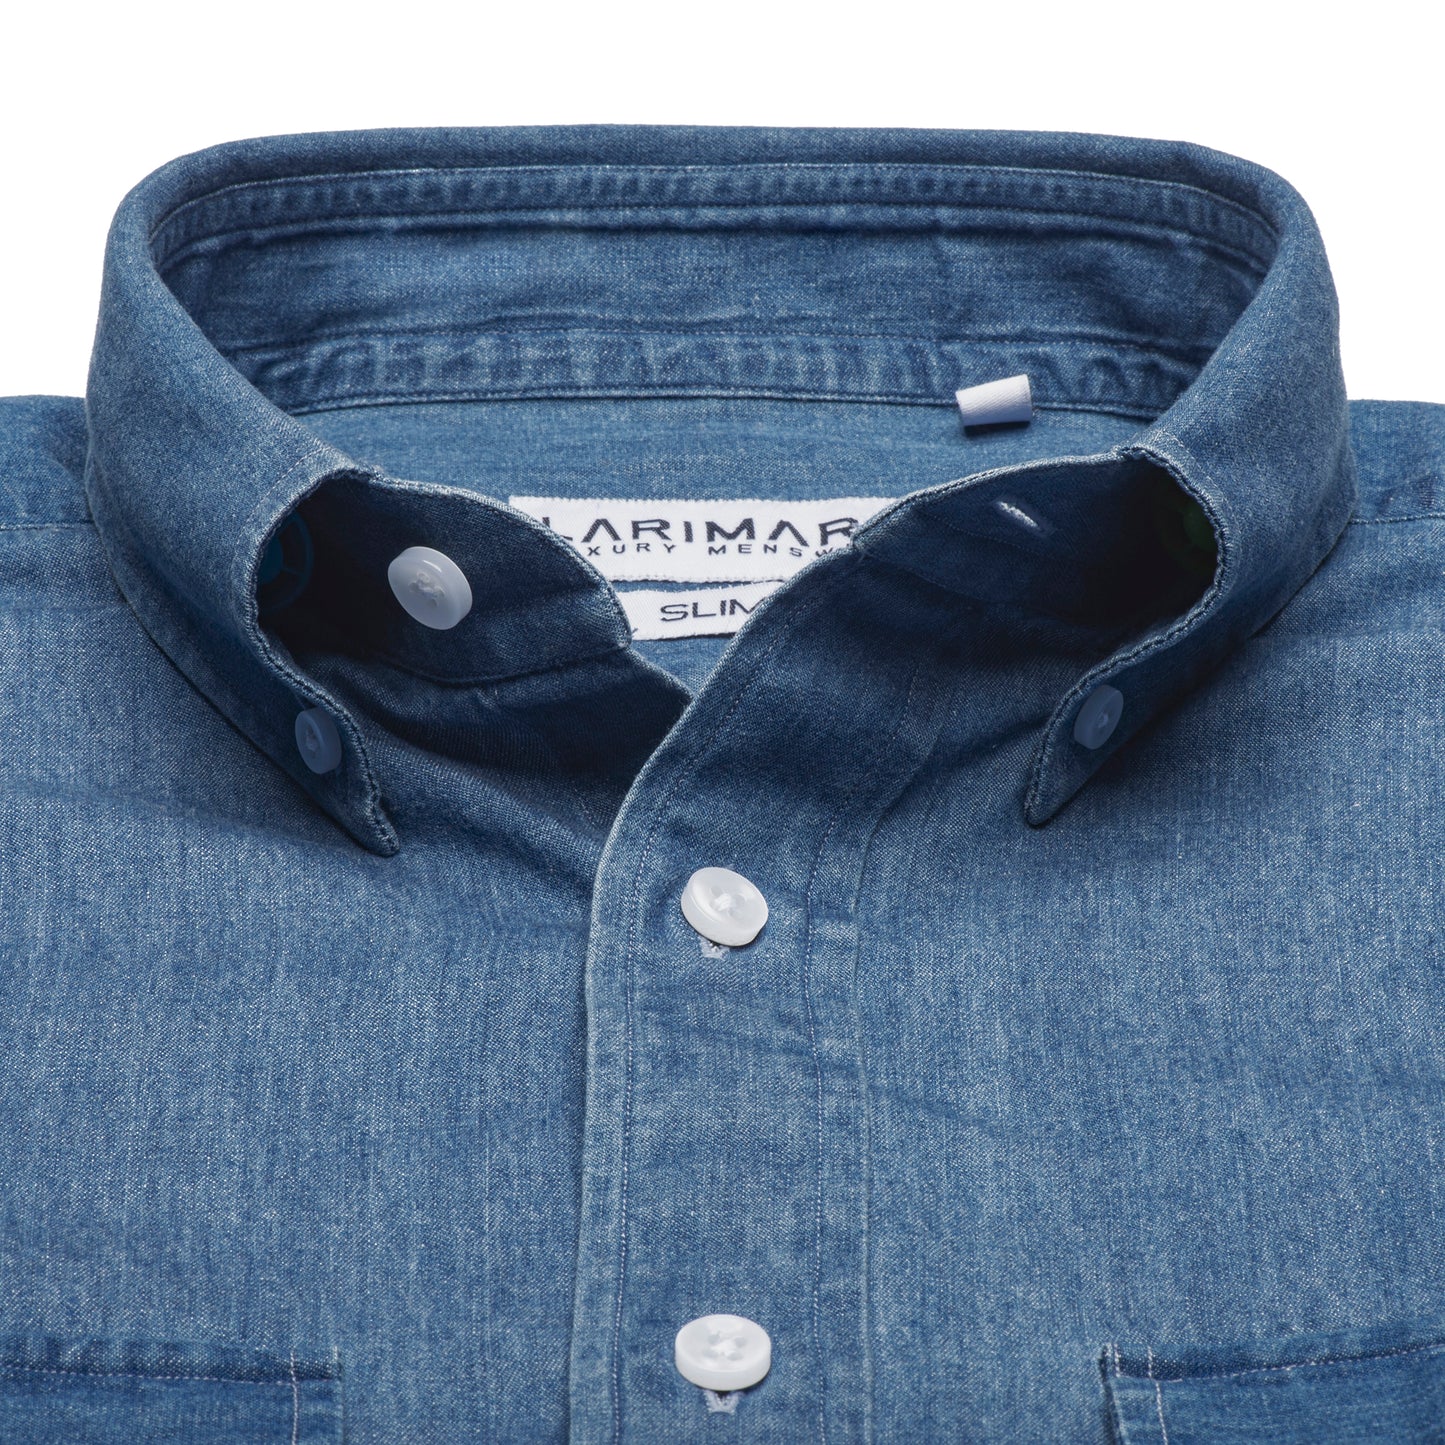 Collar of dark blue denim cotton shirt